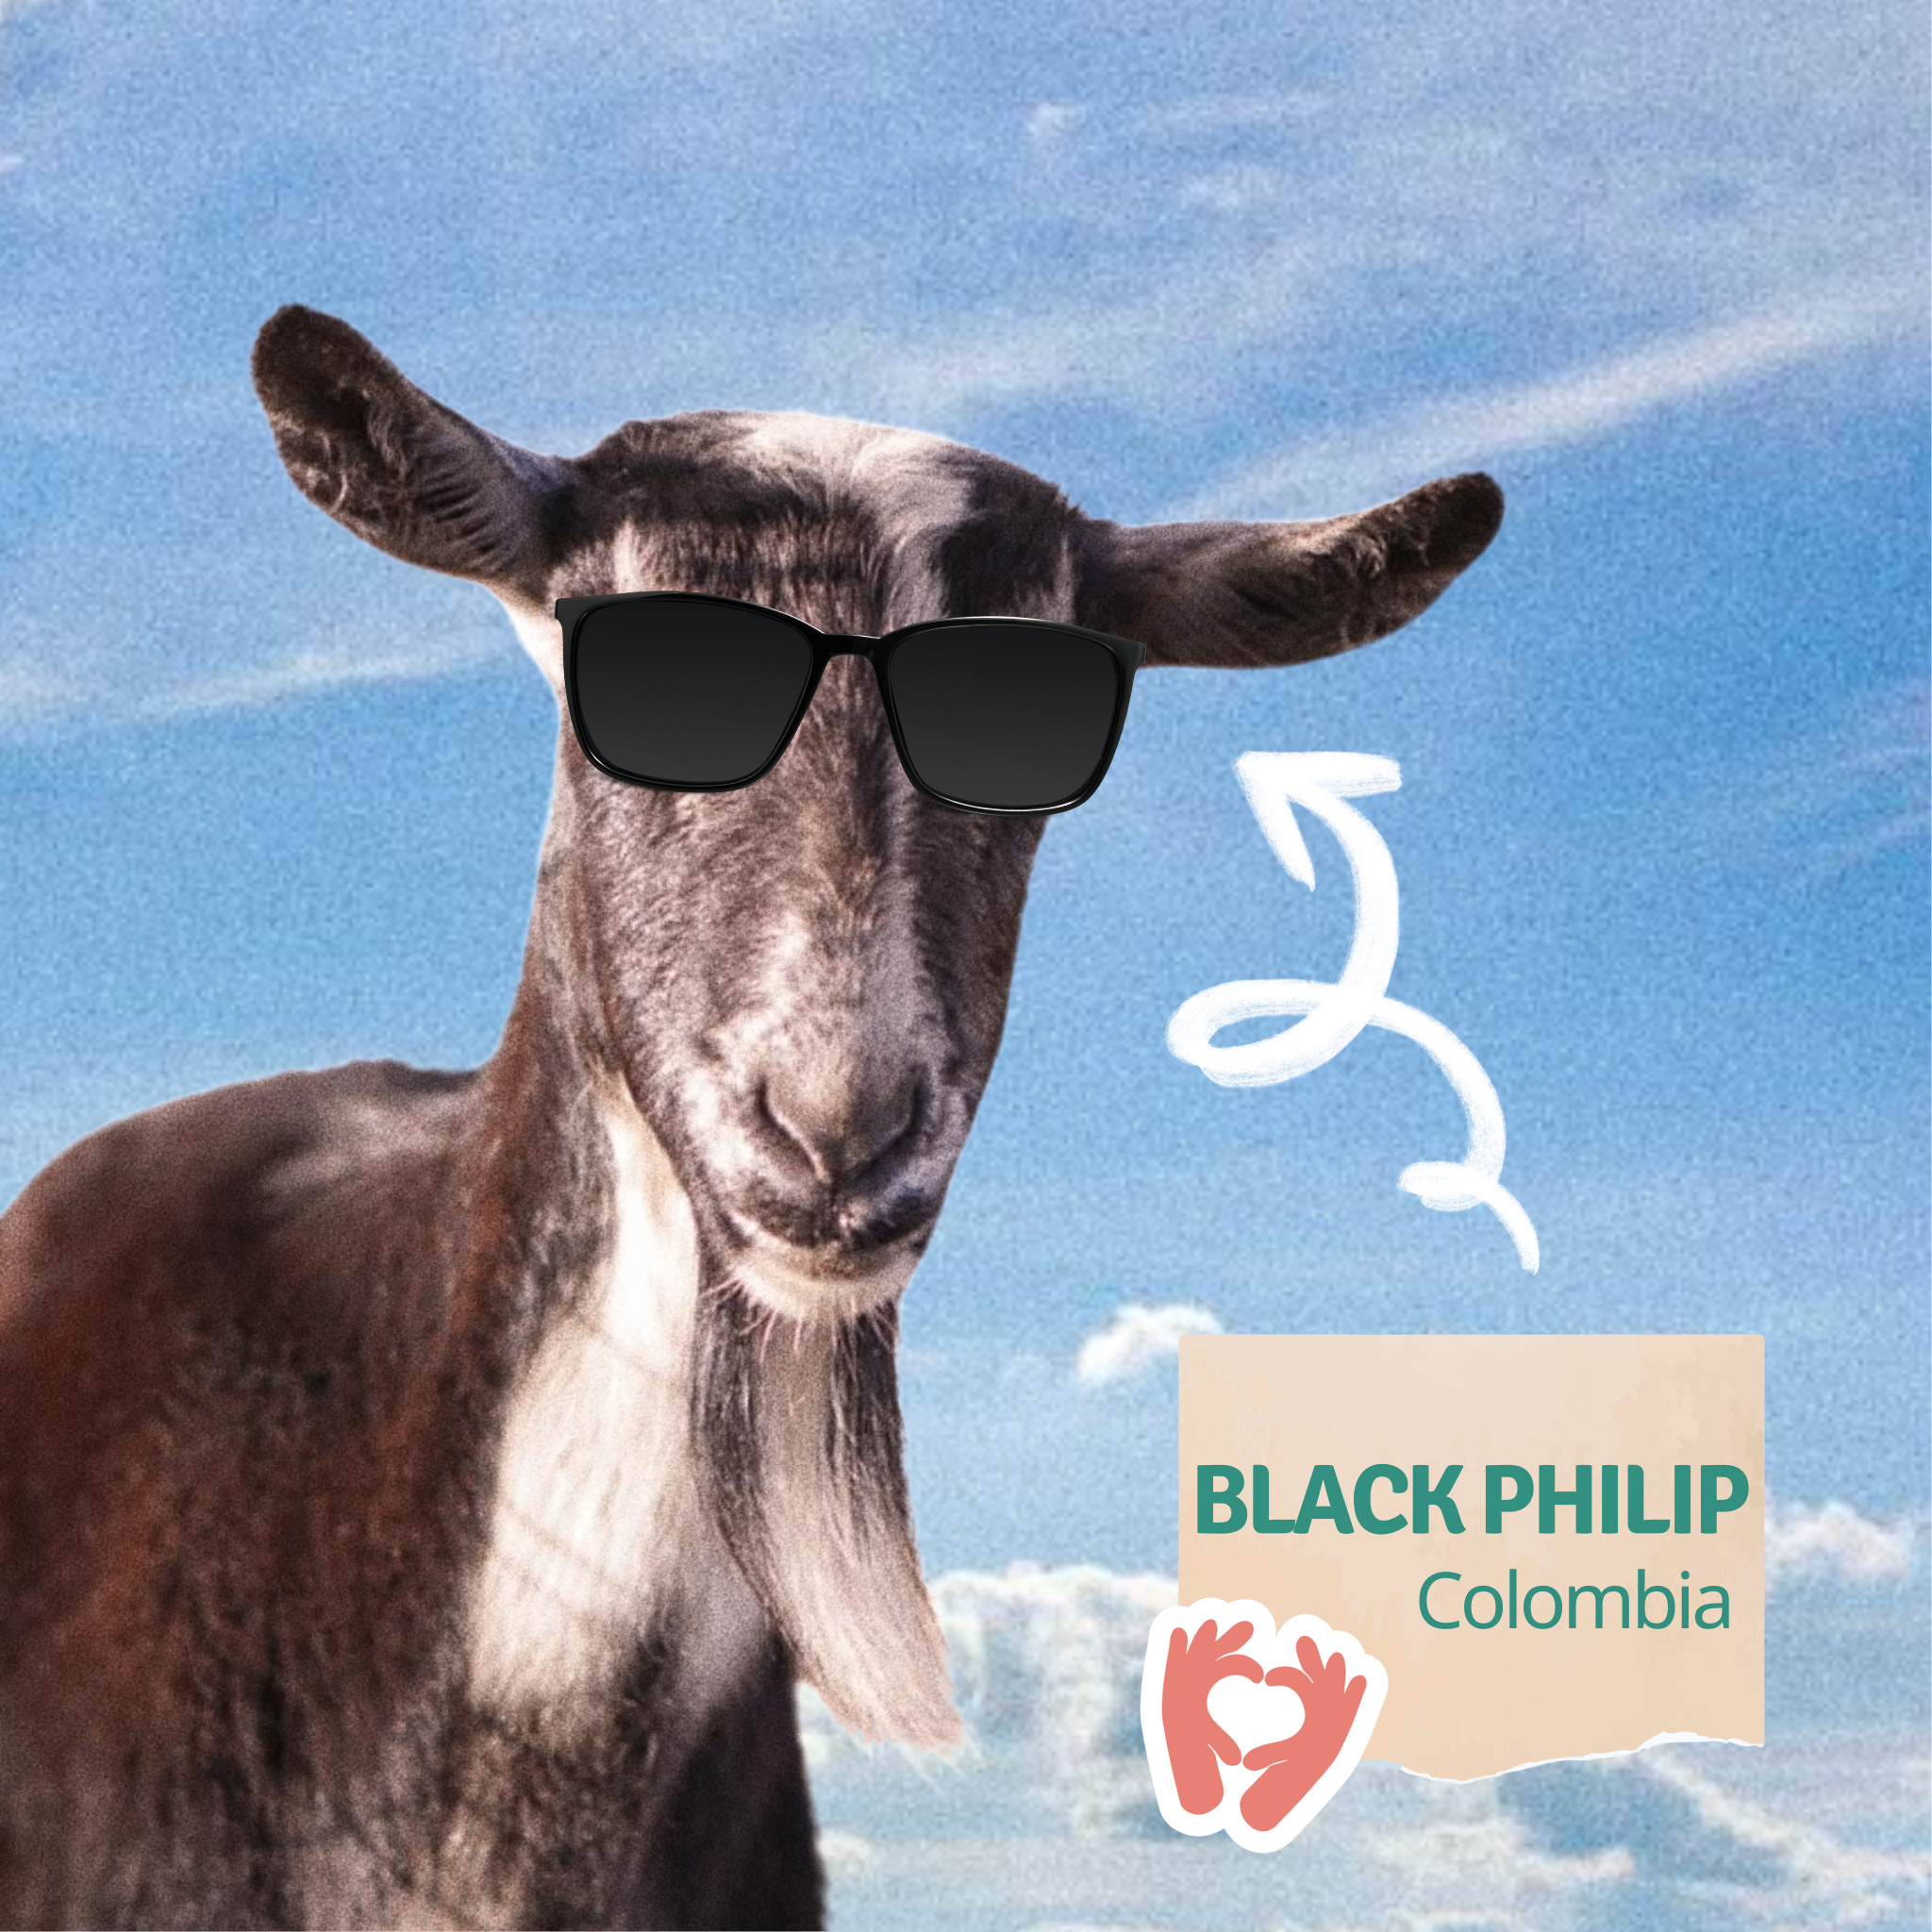 Black Philip